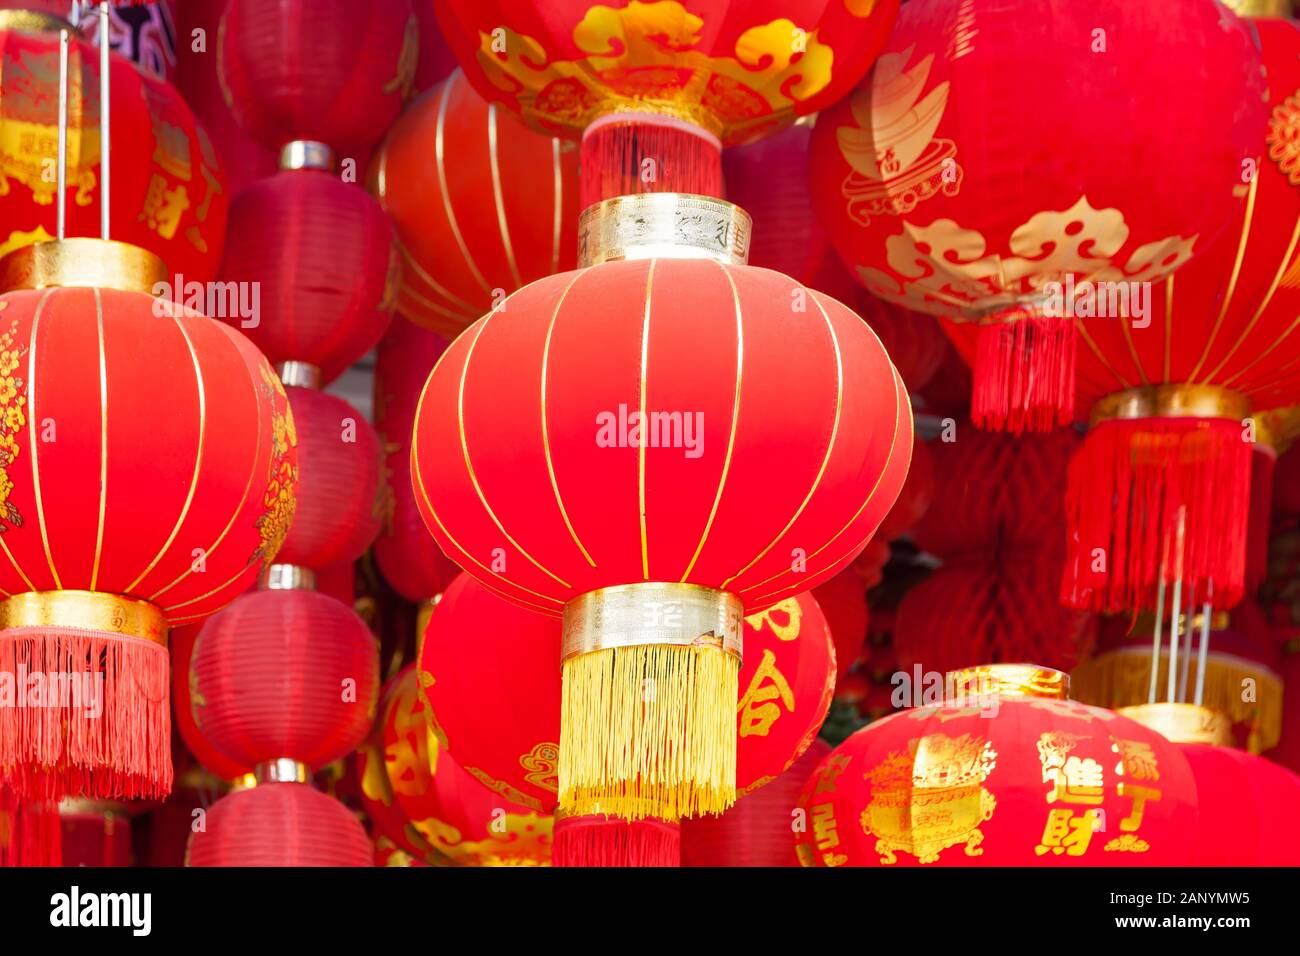 Handgefertigte Fabric rote Laternen hängen für das chinesische Neujahr in Chinatown. Den Text 'er' auf Laternen, Glück und Harmonie in der chinesischen Konnotation, und Th Stockfoto